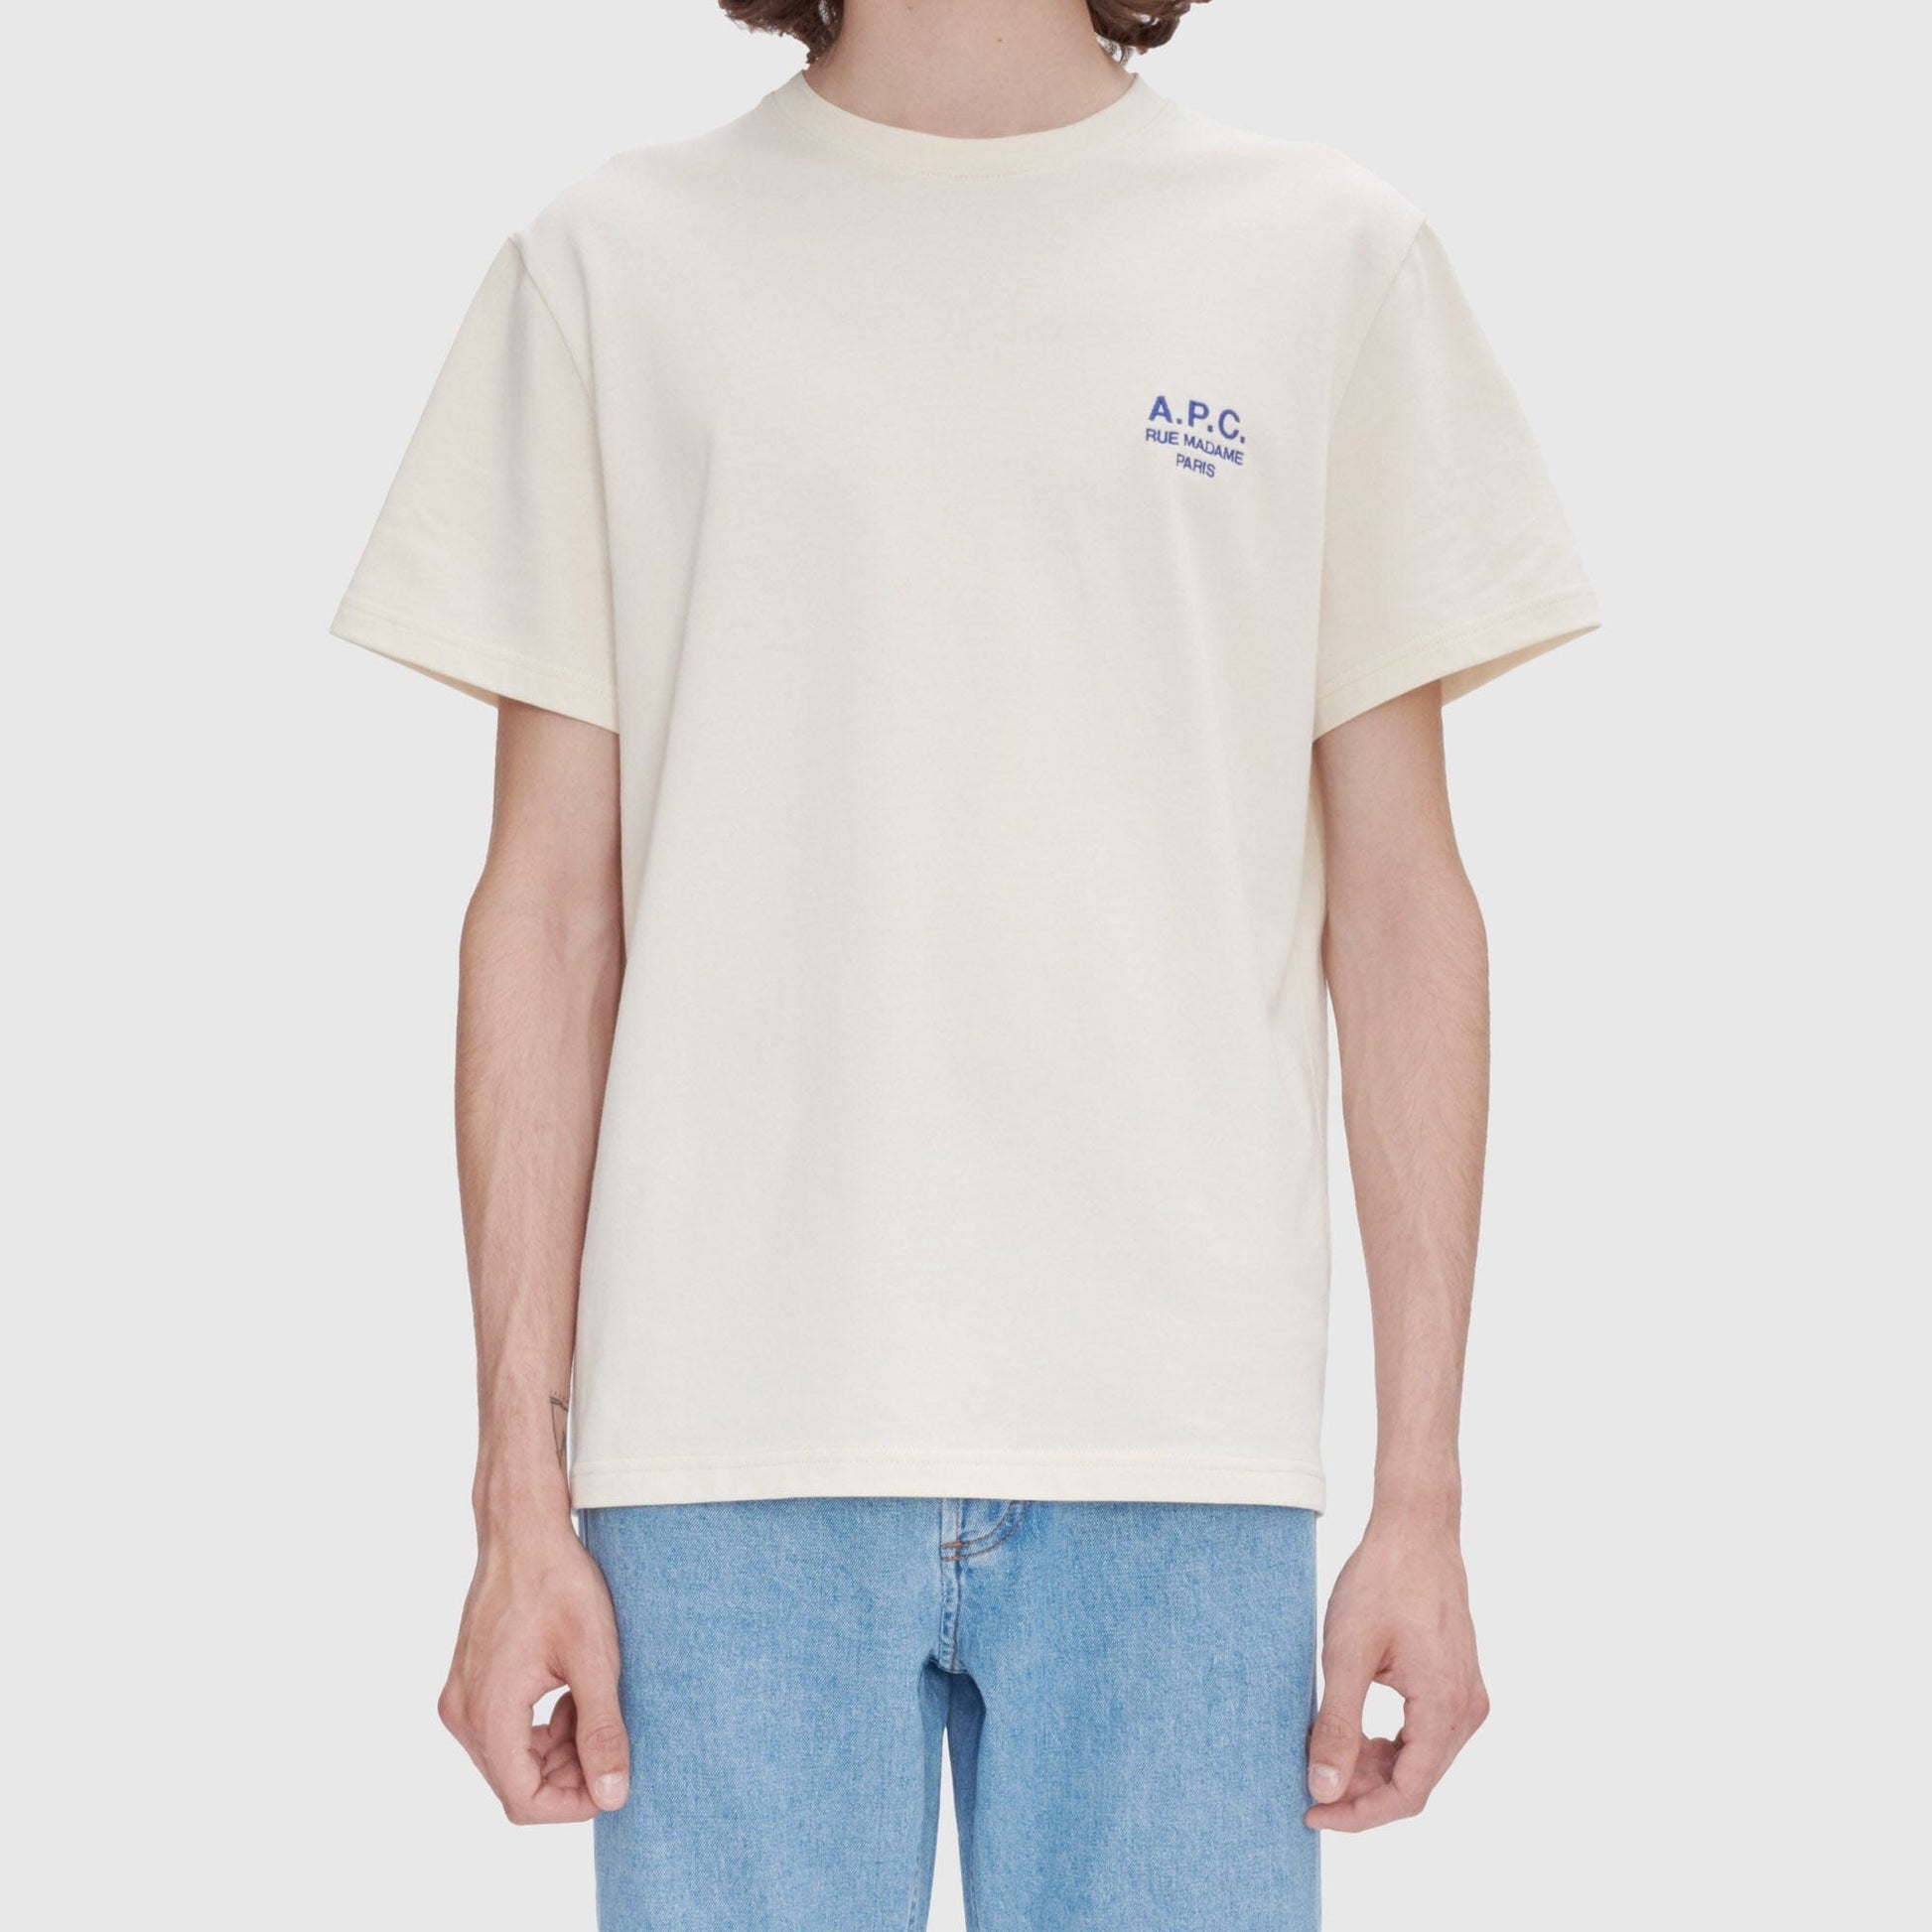 A.P.C Raymond T-Shirt - Casse/Bleu T-Shirt A.P.C 